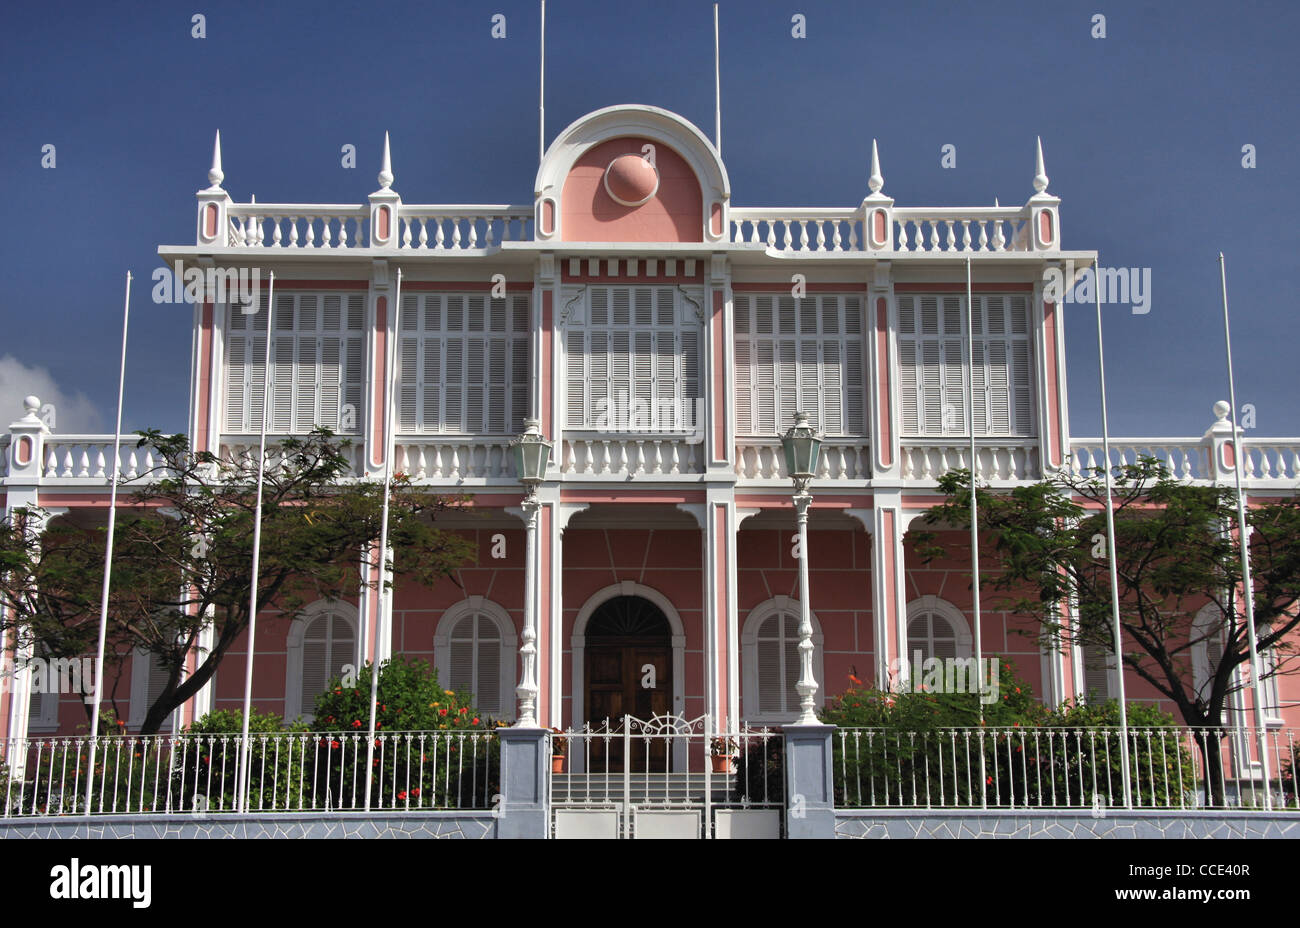 Palácio do Governador (Governor's Palace) in Mindelo, Sao Vicente Island, Cape Verde Archipelago Stock Photo